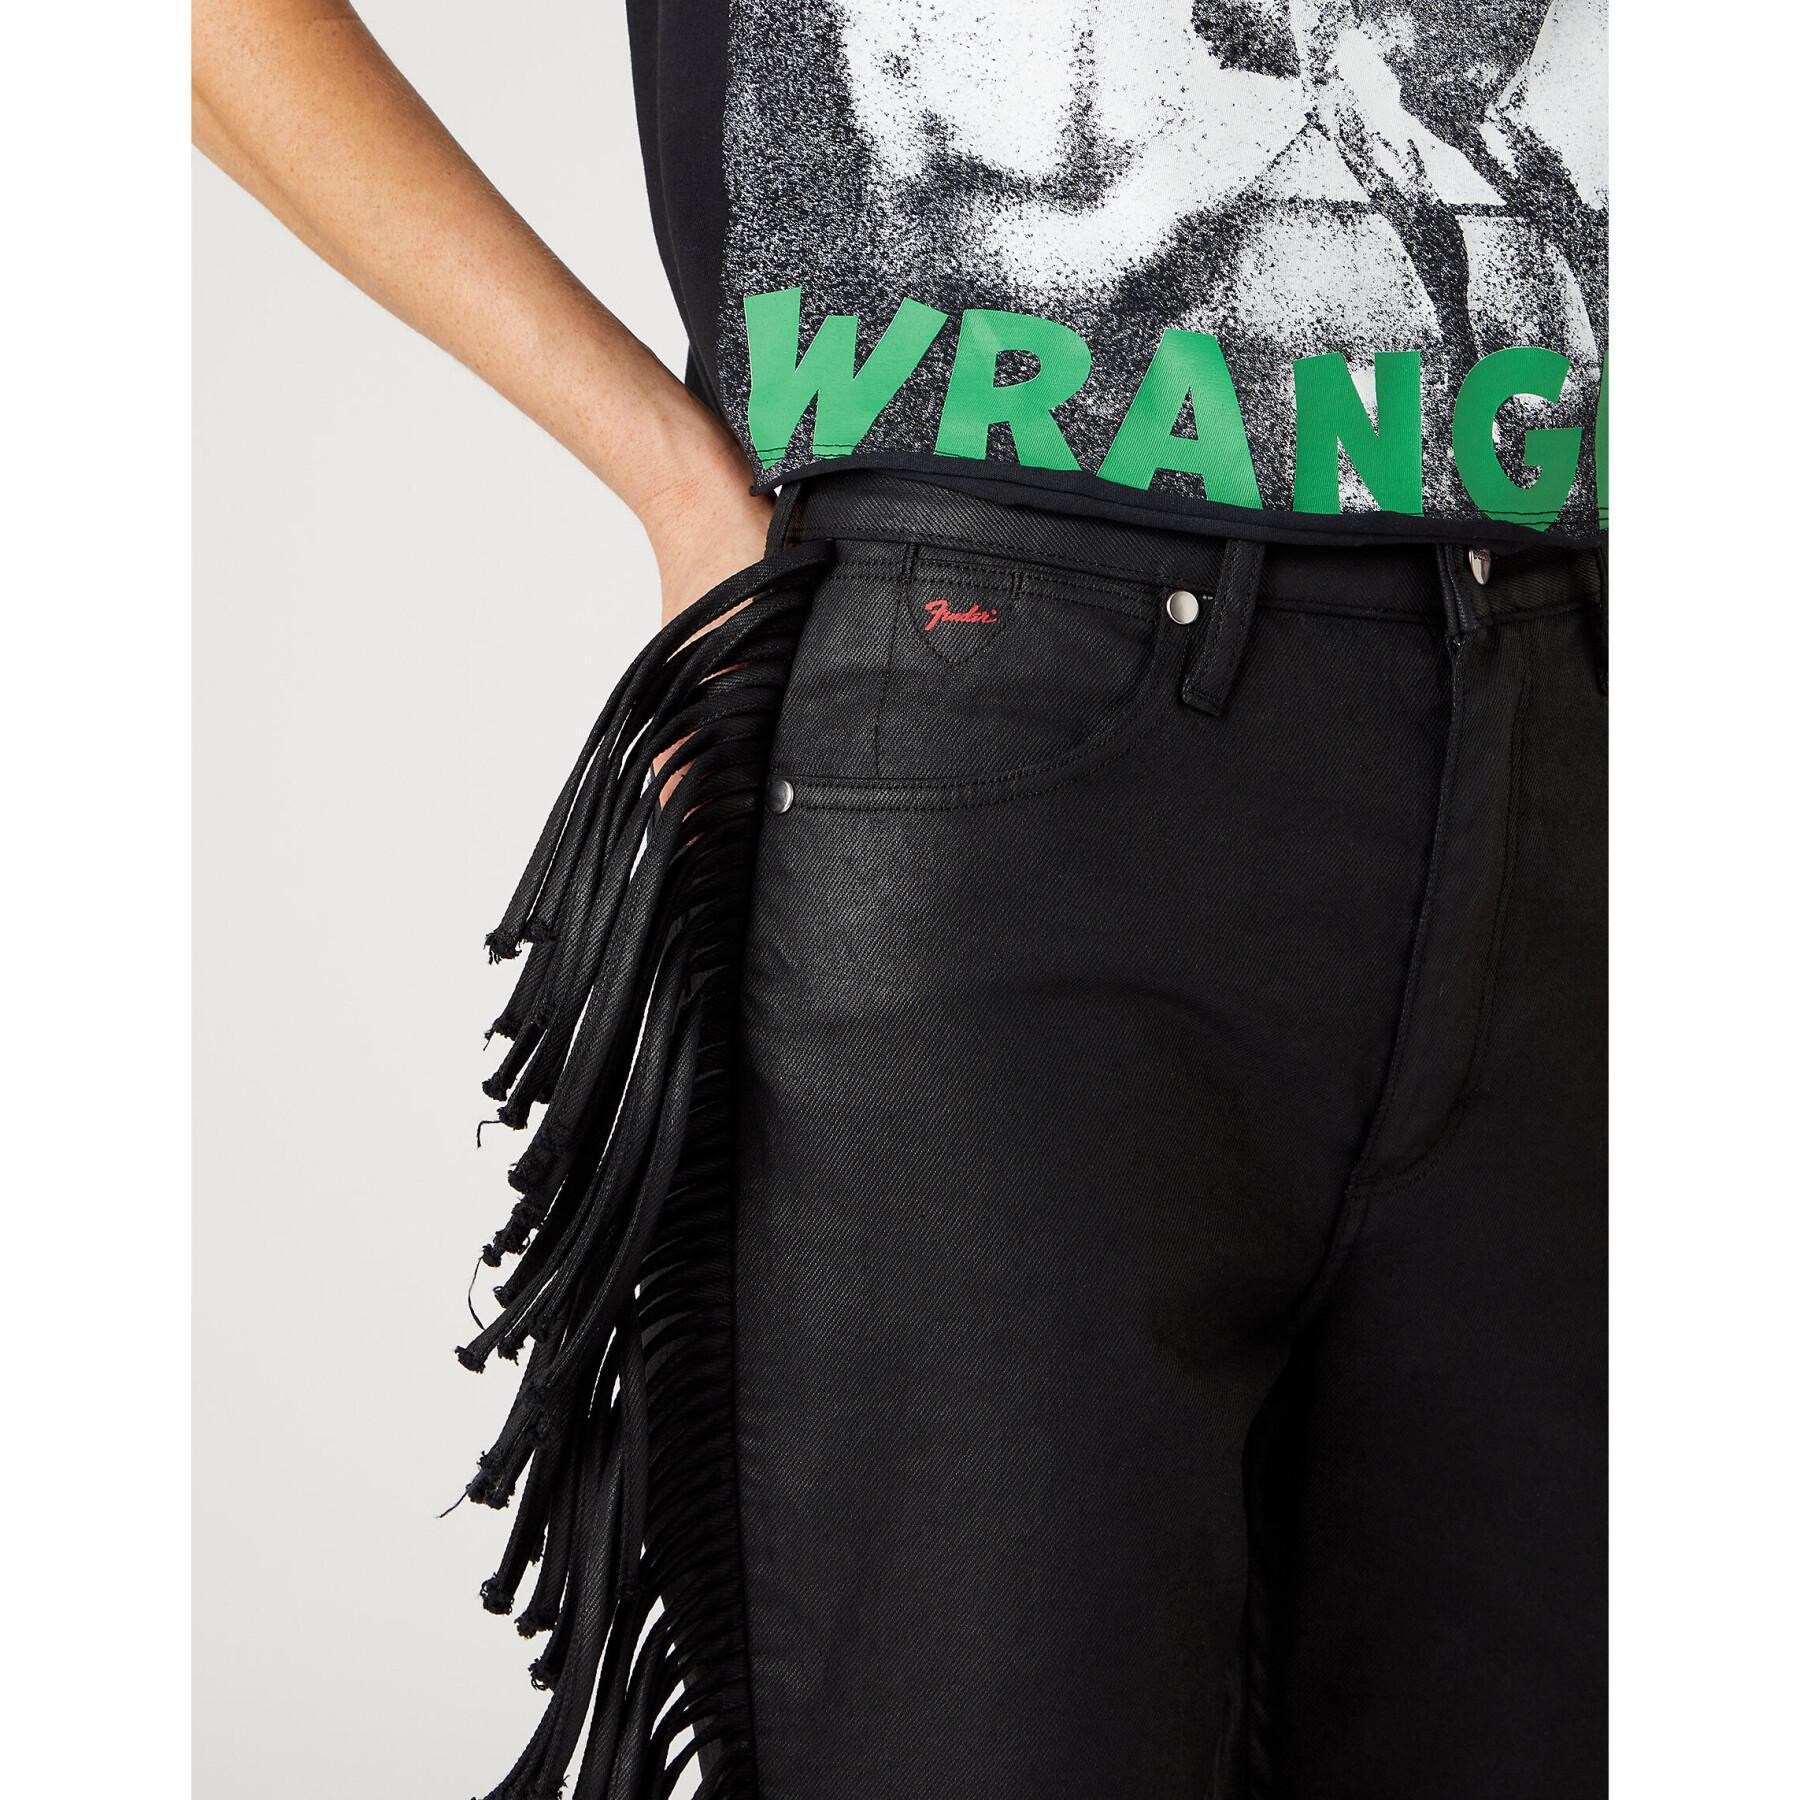 Jeans kobieta Wrangler Westward